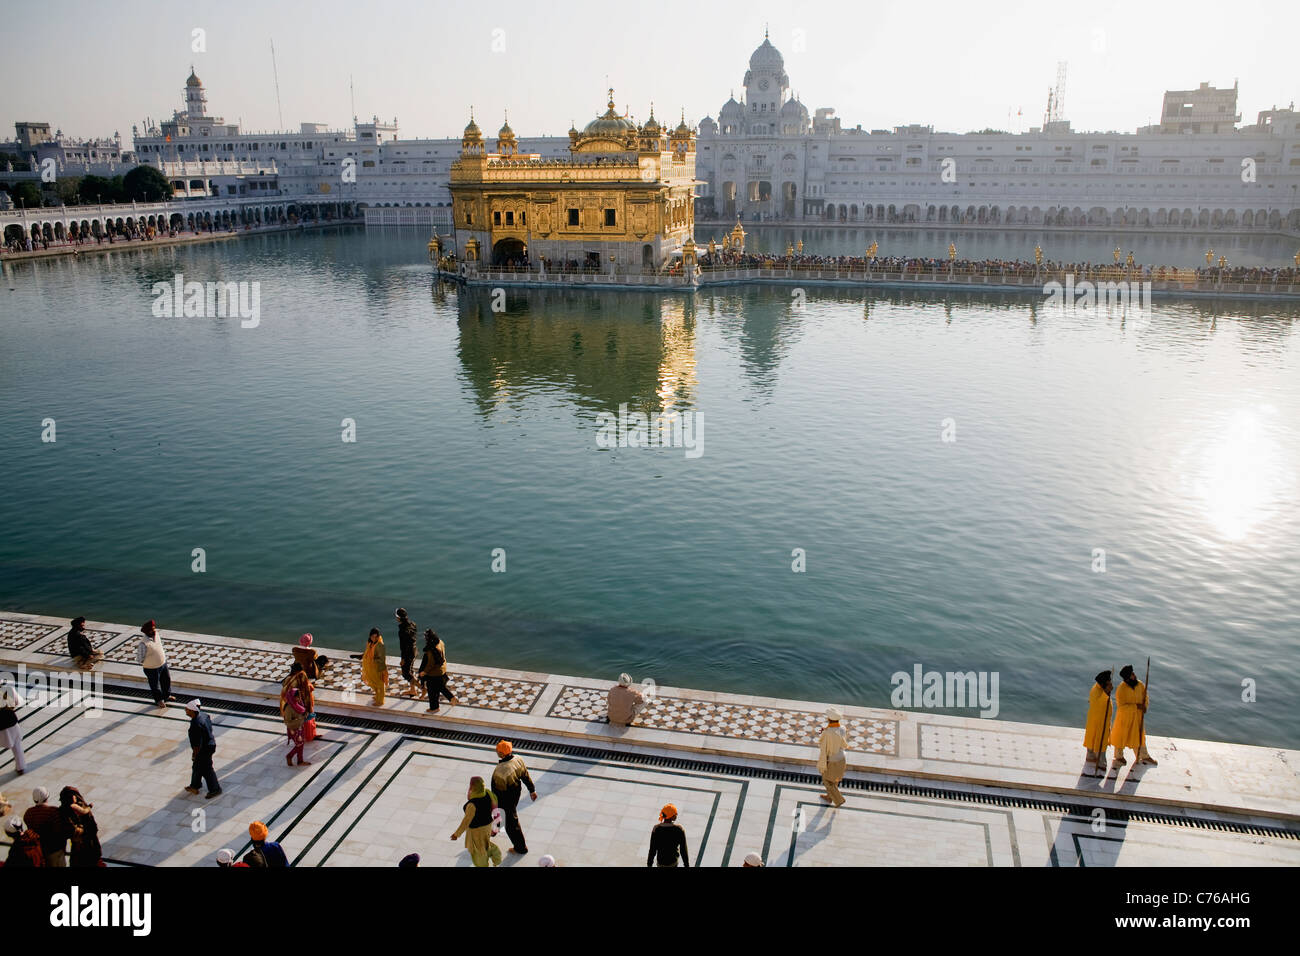 Vue aérienne de l'Golden Temple sikh à Amritsar, Inde, Etat du Punjab Banque D'Images